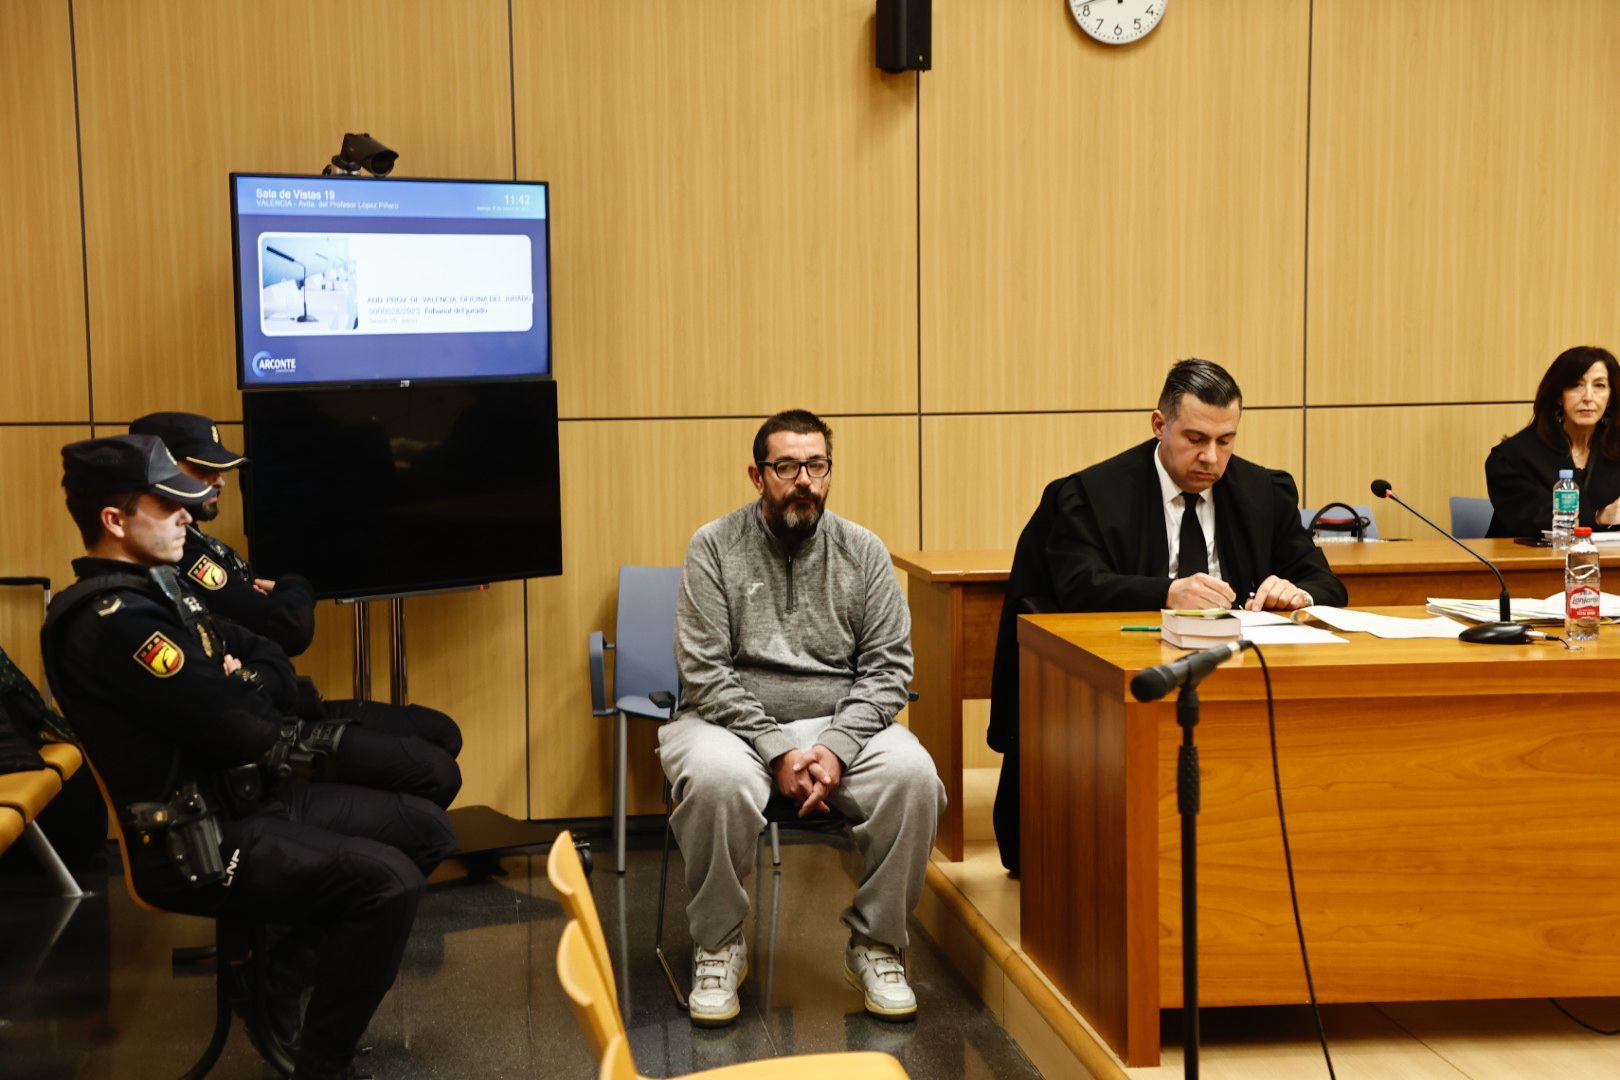 El presunto asesino se muestra tranquilo durante el primer día del juicio.